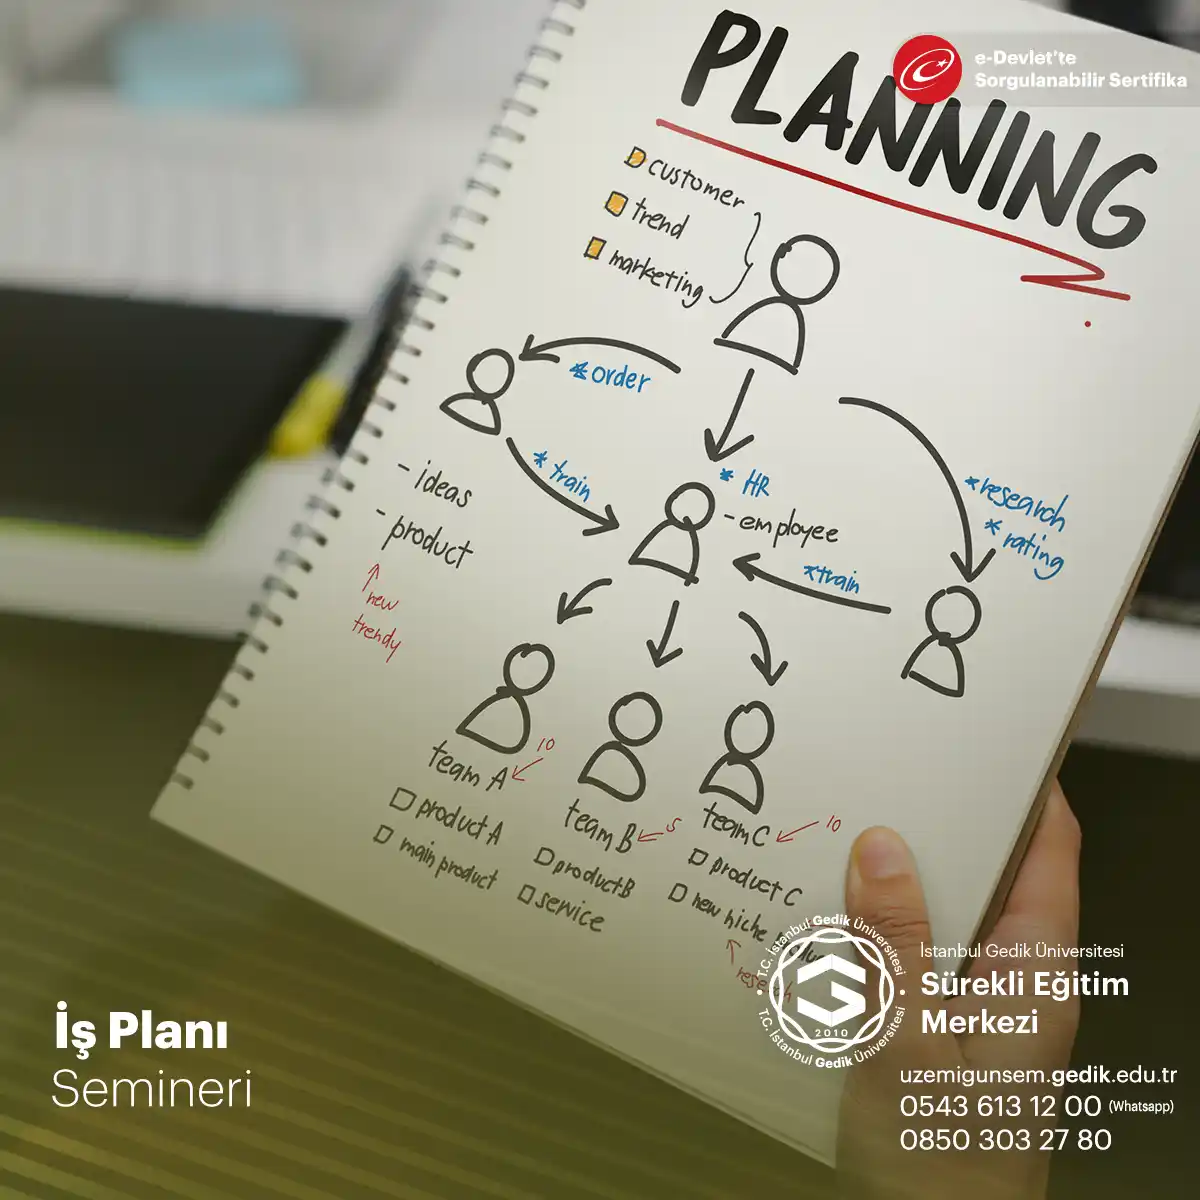 İş Planı Semineri, girişimciler, iş sahipleri ve yeni iş kurmak isteyenler için tasarlanmış bir eğitim programıdır.